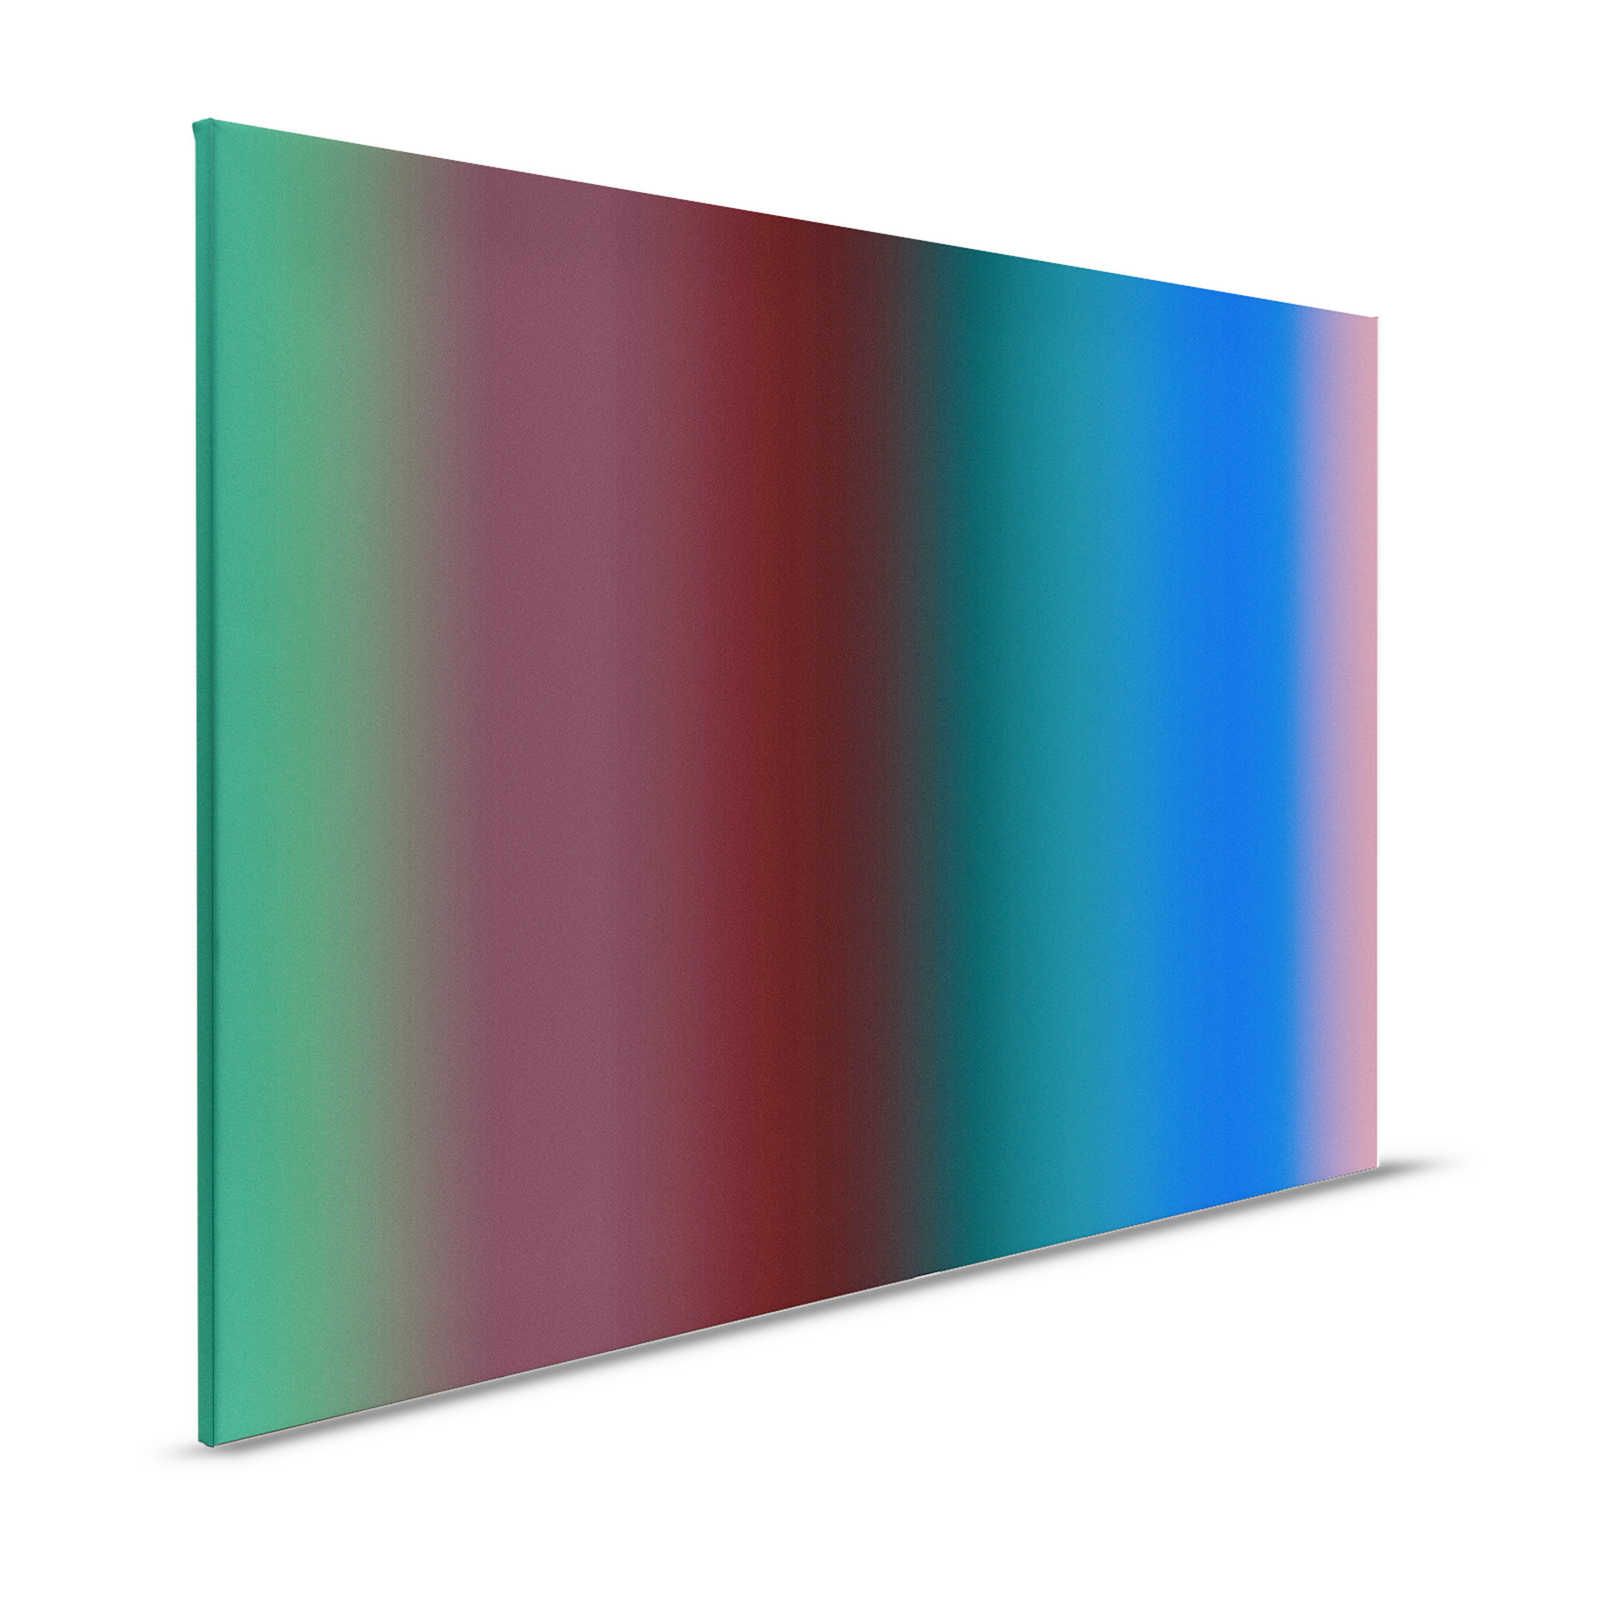 Over the Rainbow 2 - Pittura su tela a strisce colorate con effetto gradiente - 1,20 m x 0,80 m
